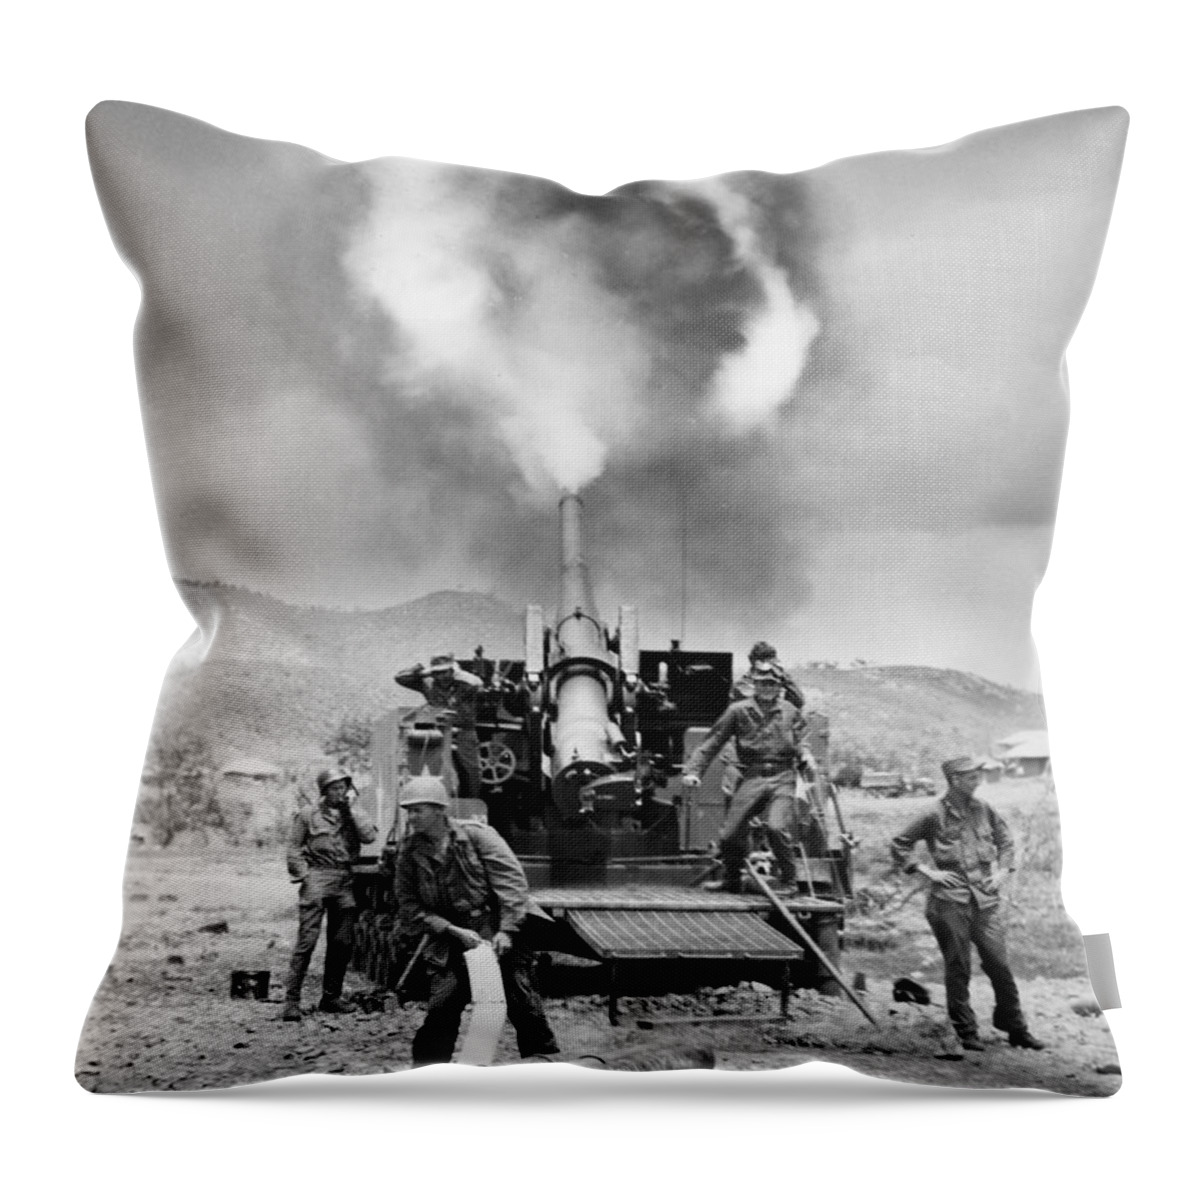 1951 Throw Pillow featuring the photograph Korean War: Artillery #4 by Granger